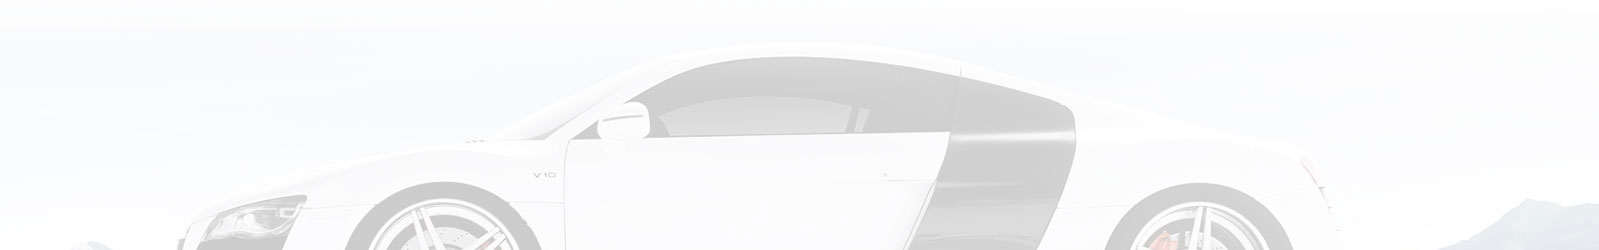 Imagen de fondo automóvil blanco